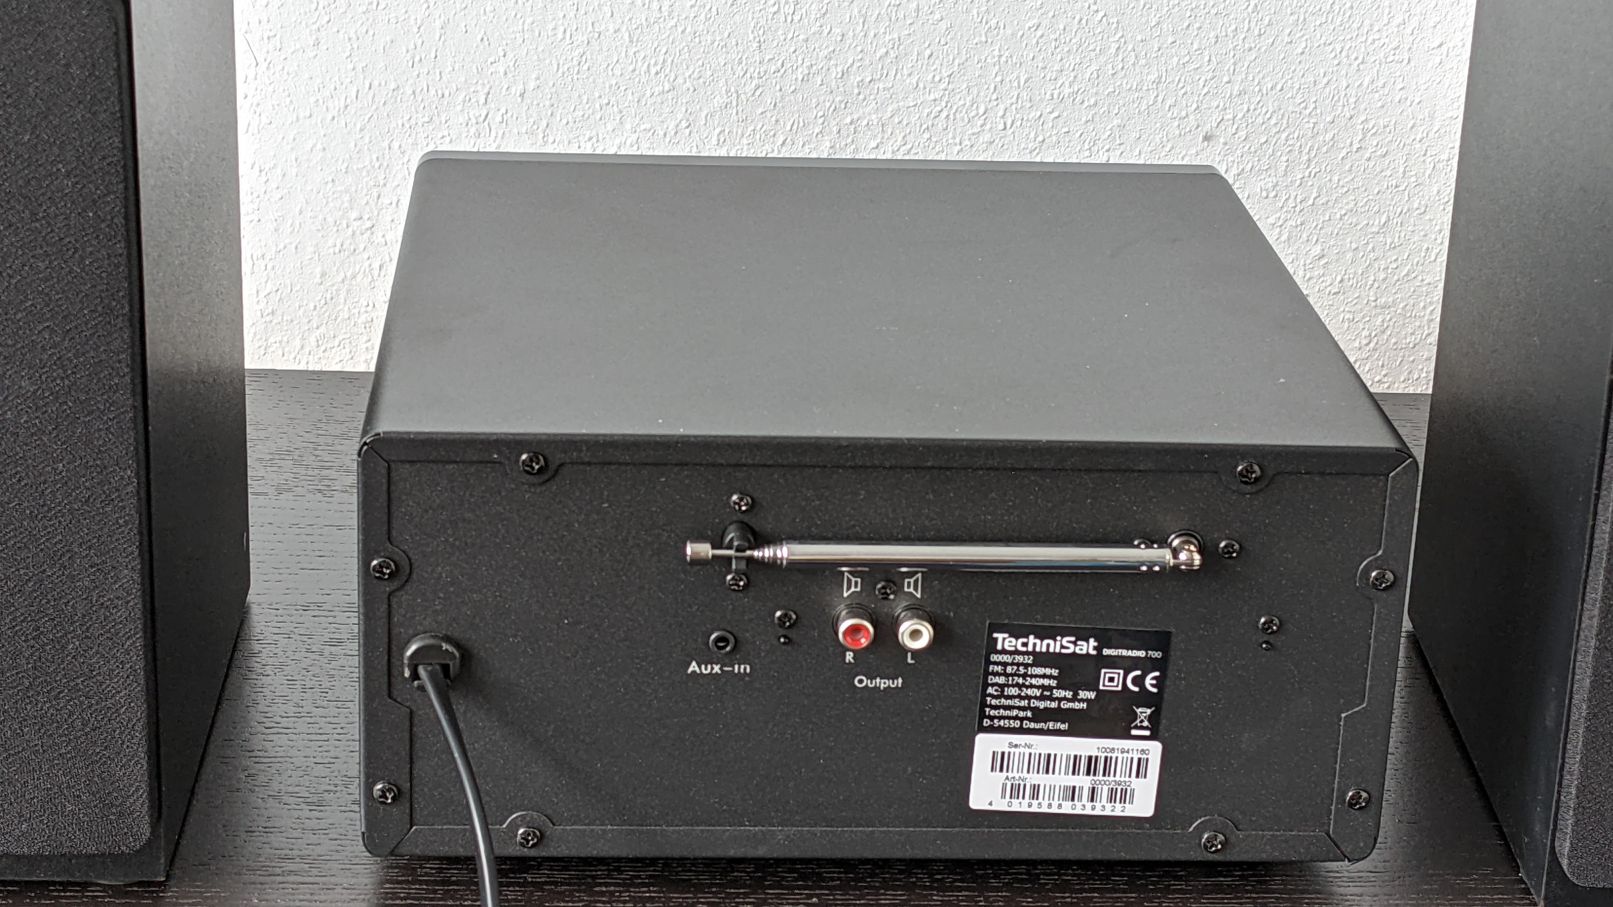 TechniSat DIGITRADIO 700 im Test - Hochwertige DAB+ Kompaktanlage